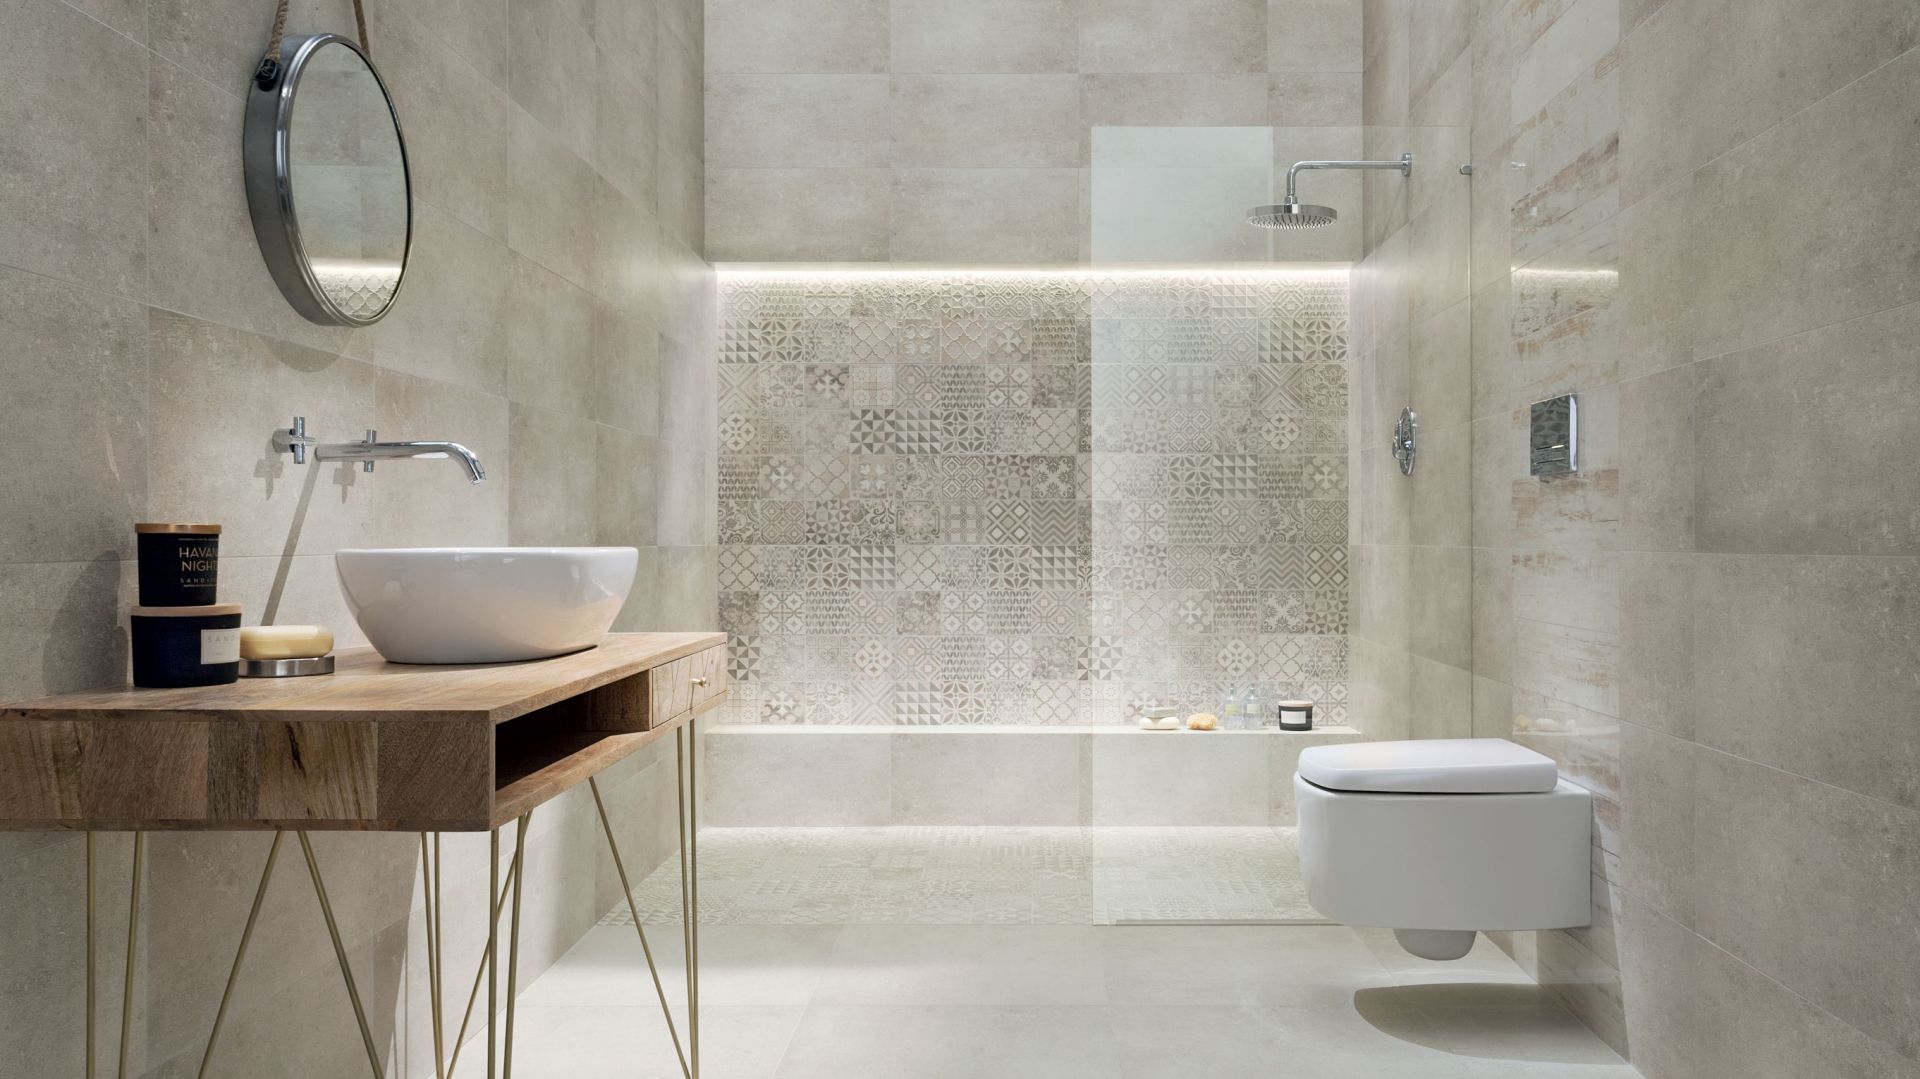 Łazienka w stylu loft: płytki ceramiczne jak beton